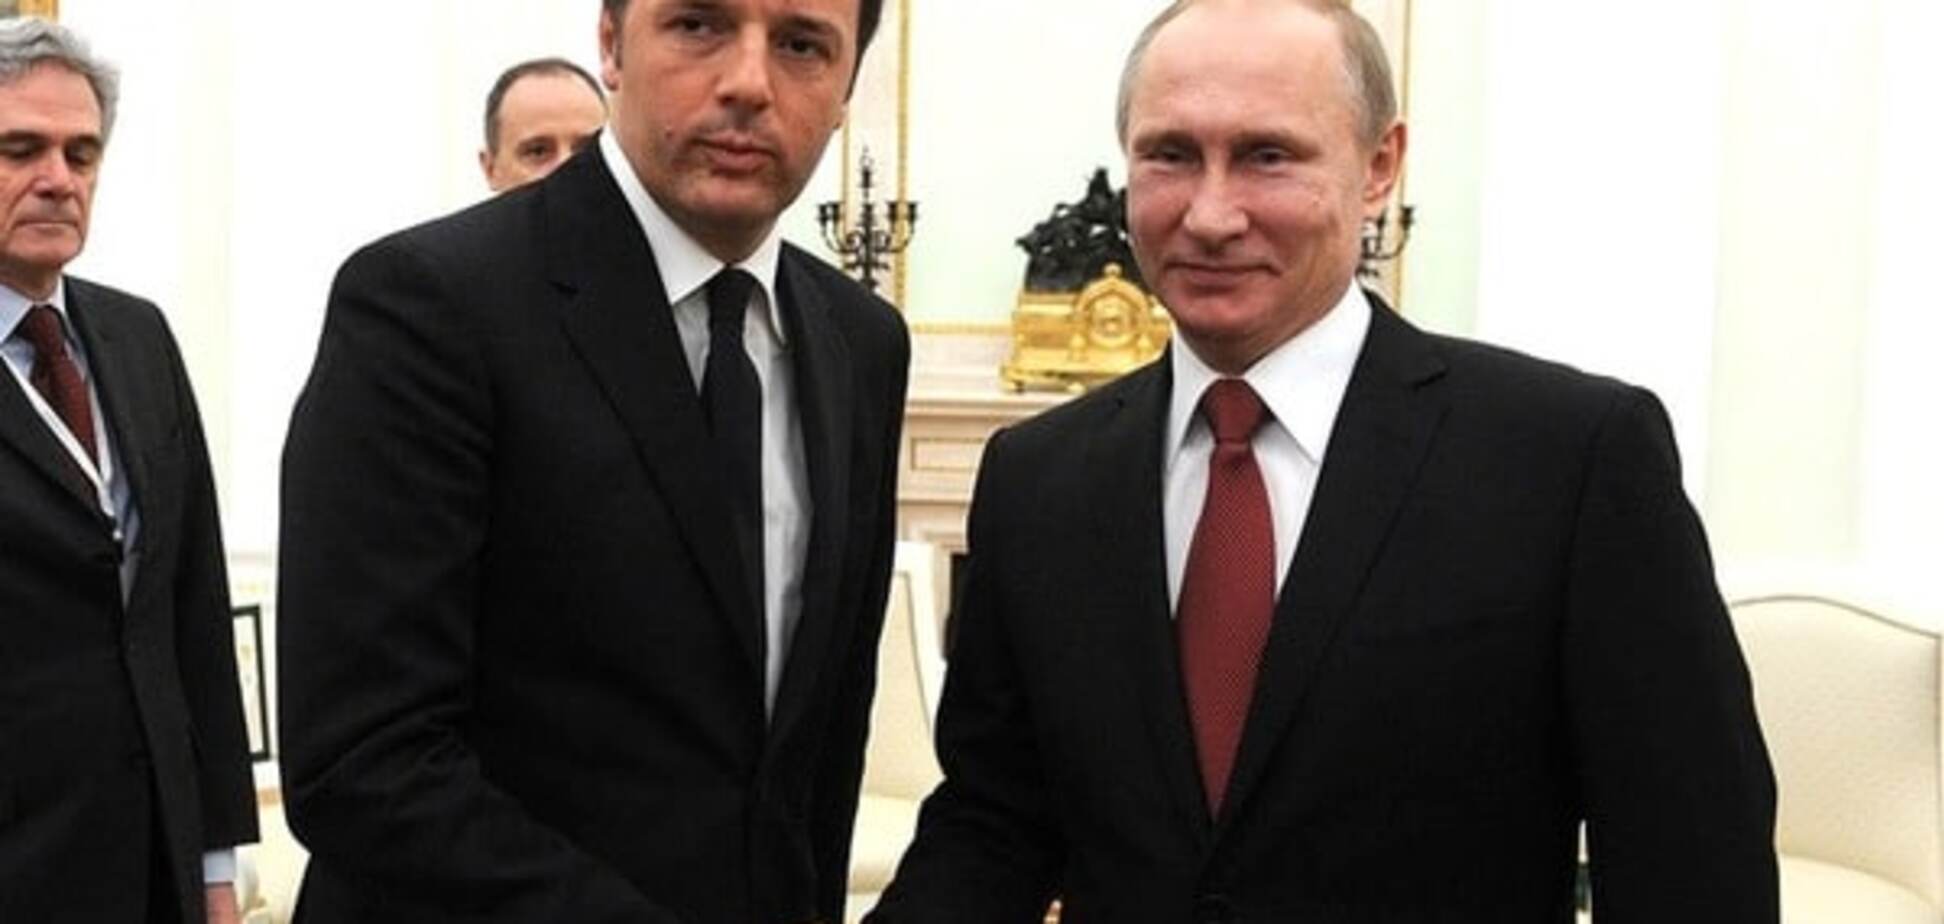 Президент России Владимир Путин встречается с итальянским премьер-министром Маттео Ренци в Москве 5 марта 2015